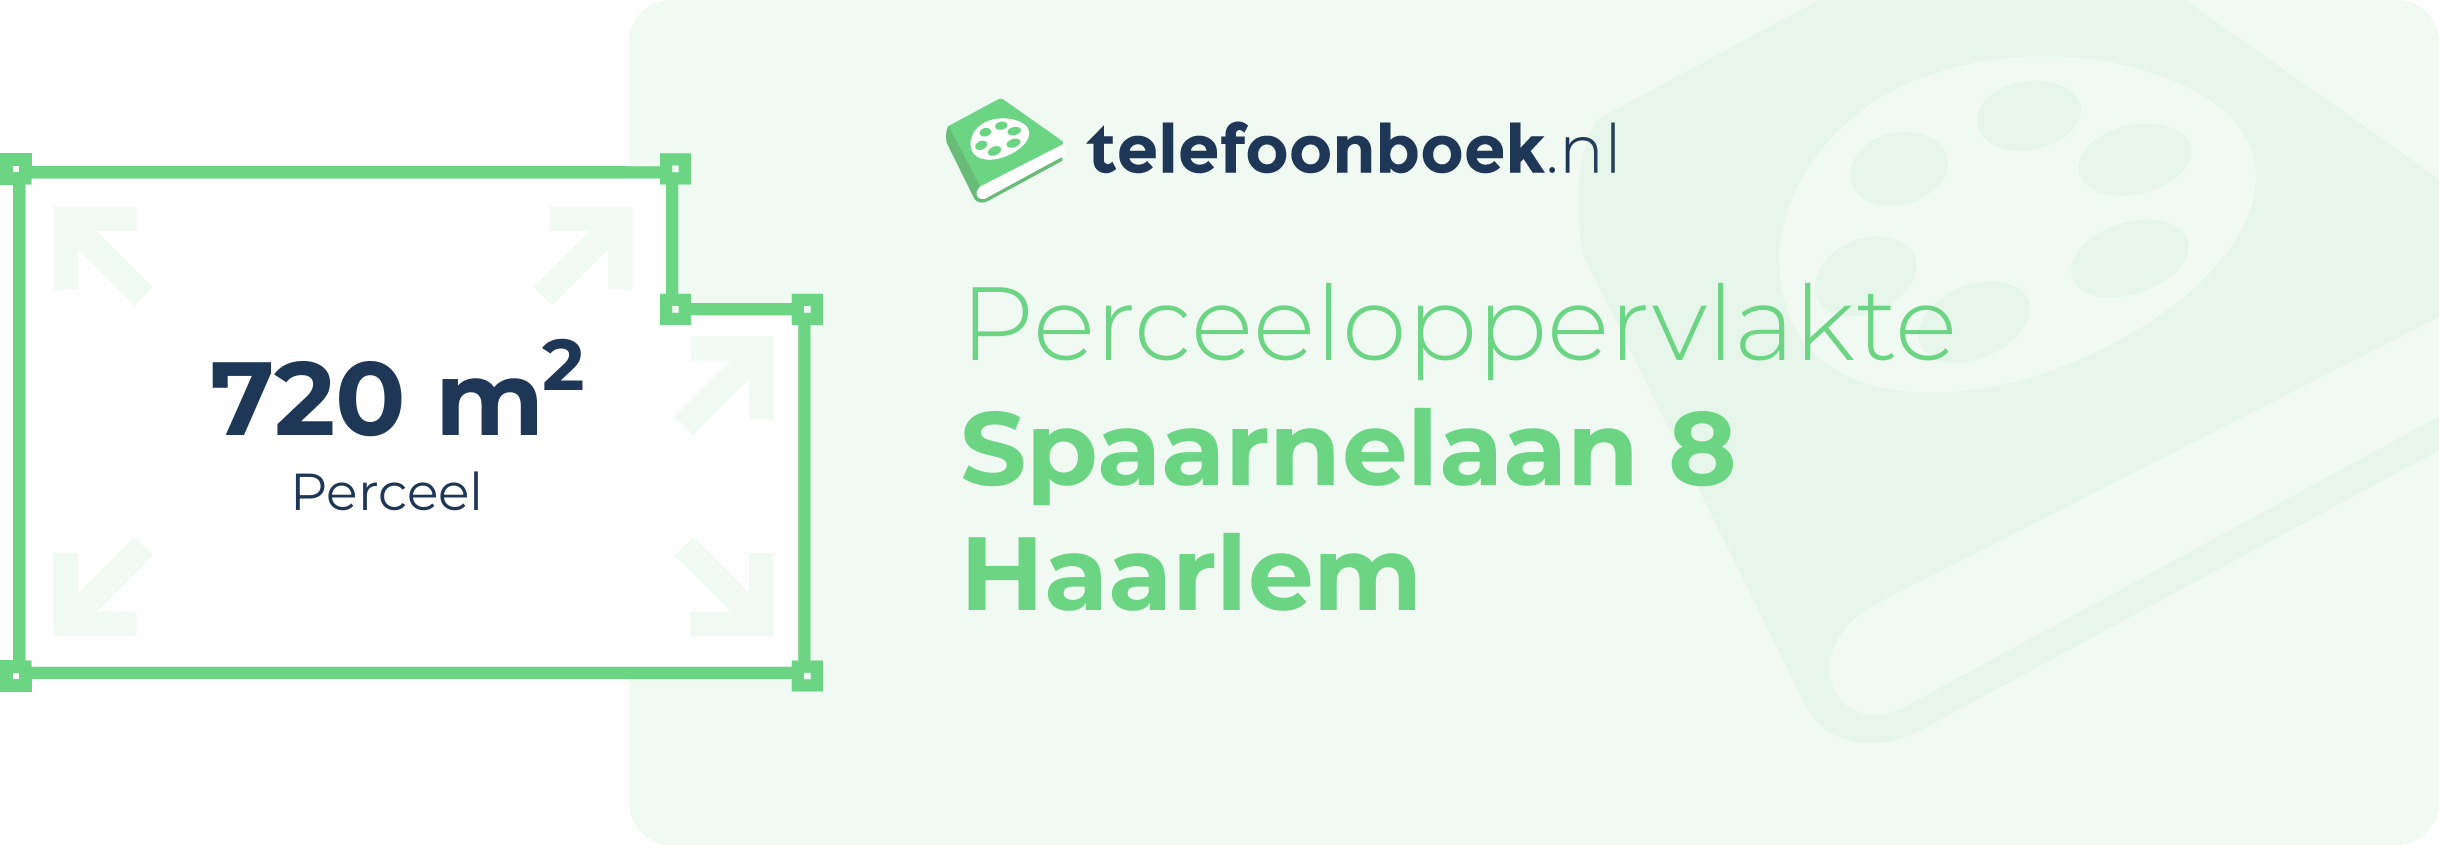 Perceeloppervlakte Spaarnelaan 8 Haarlem